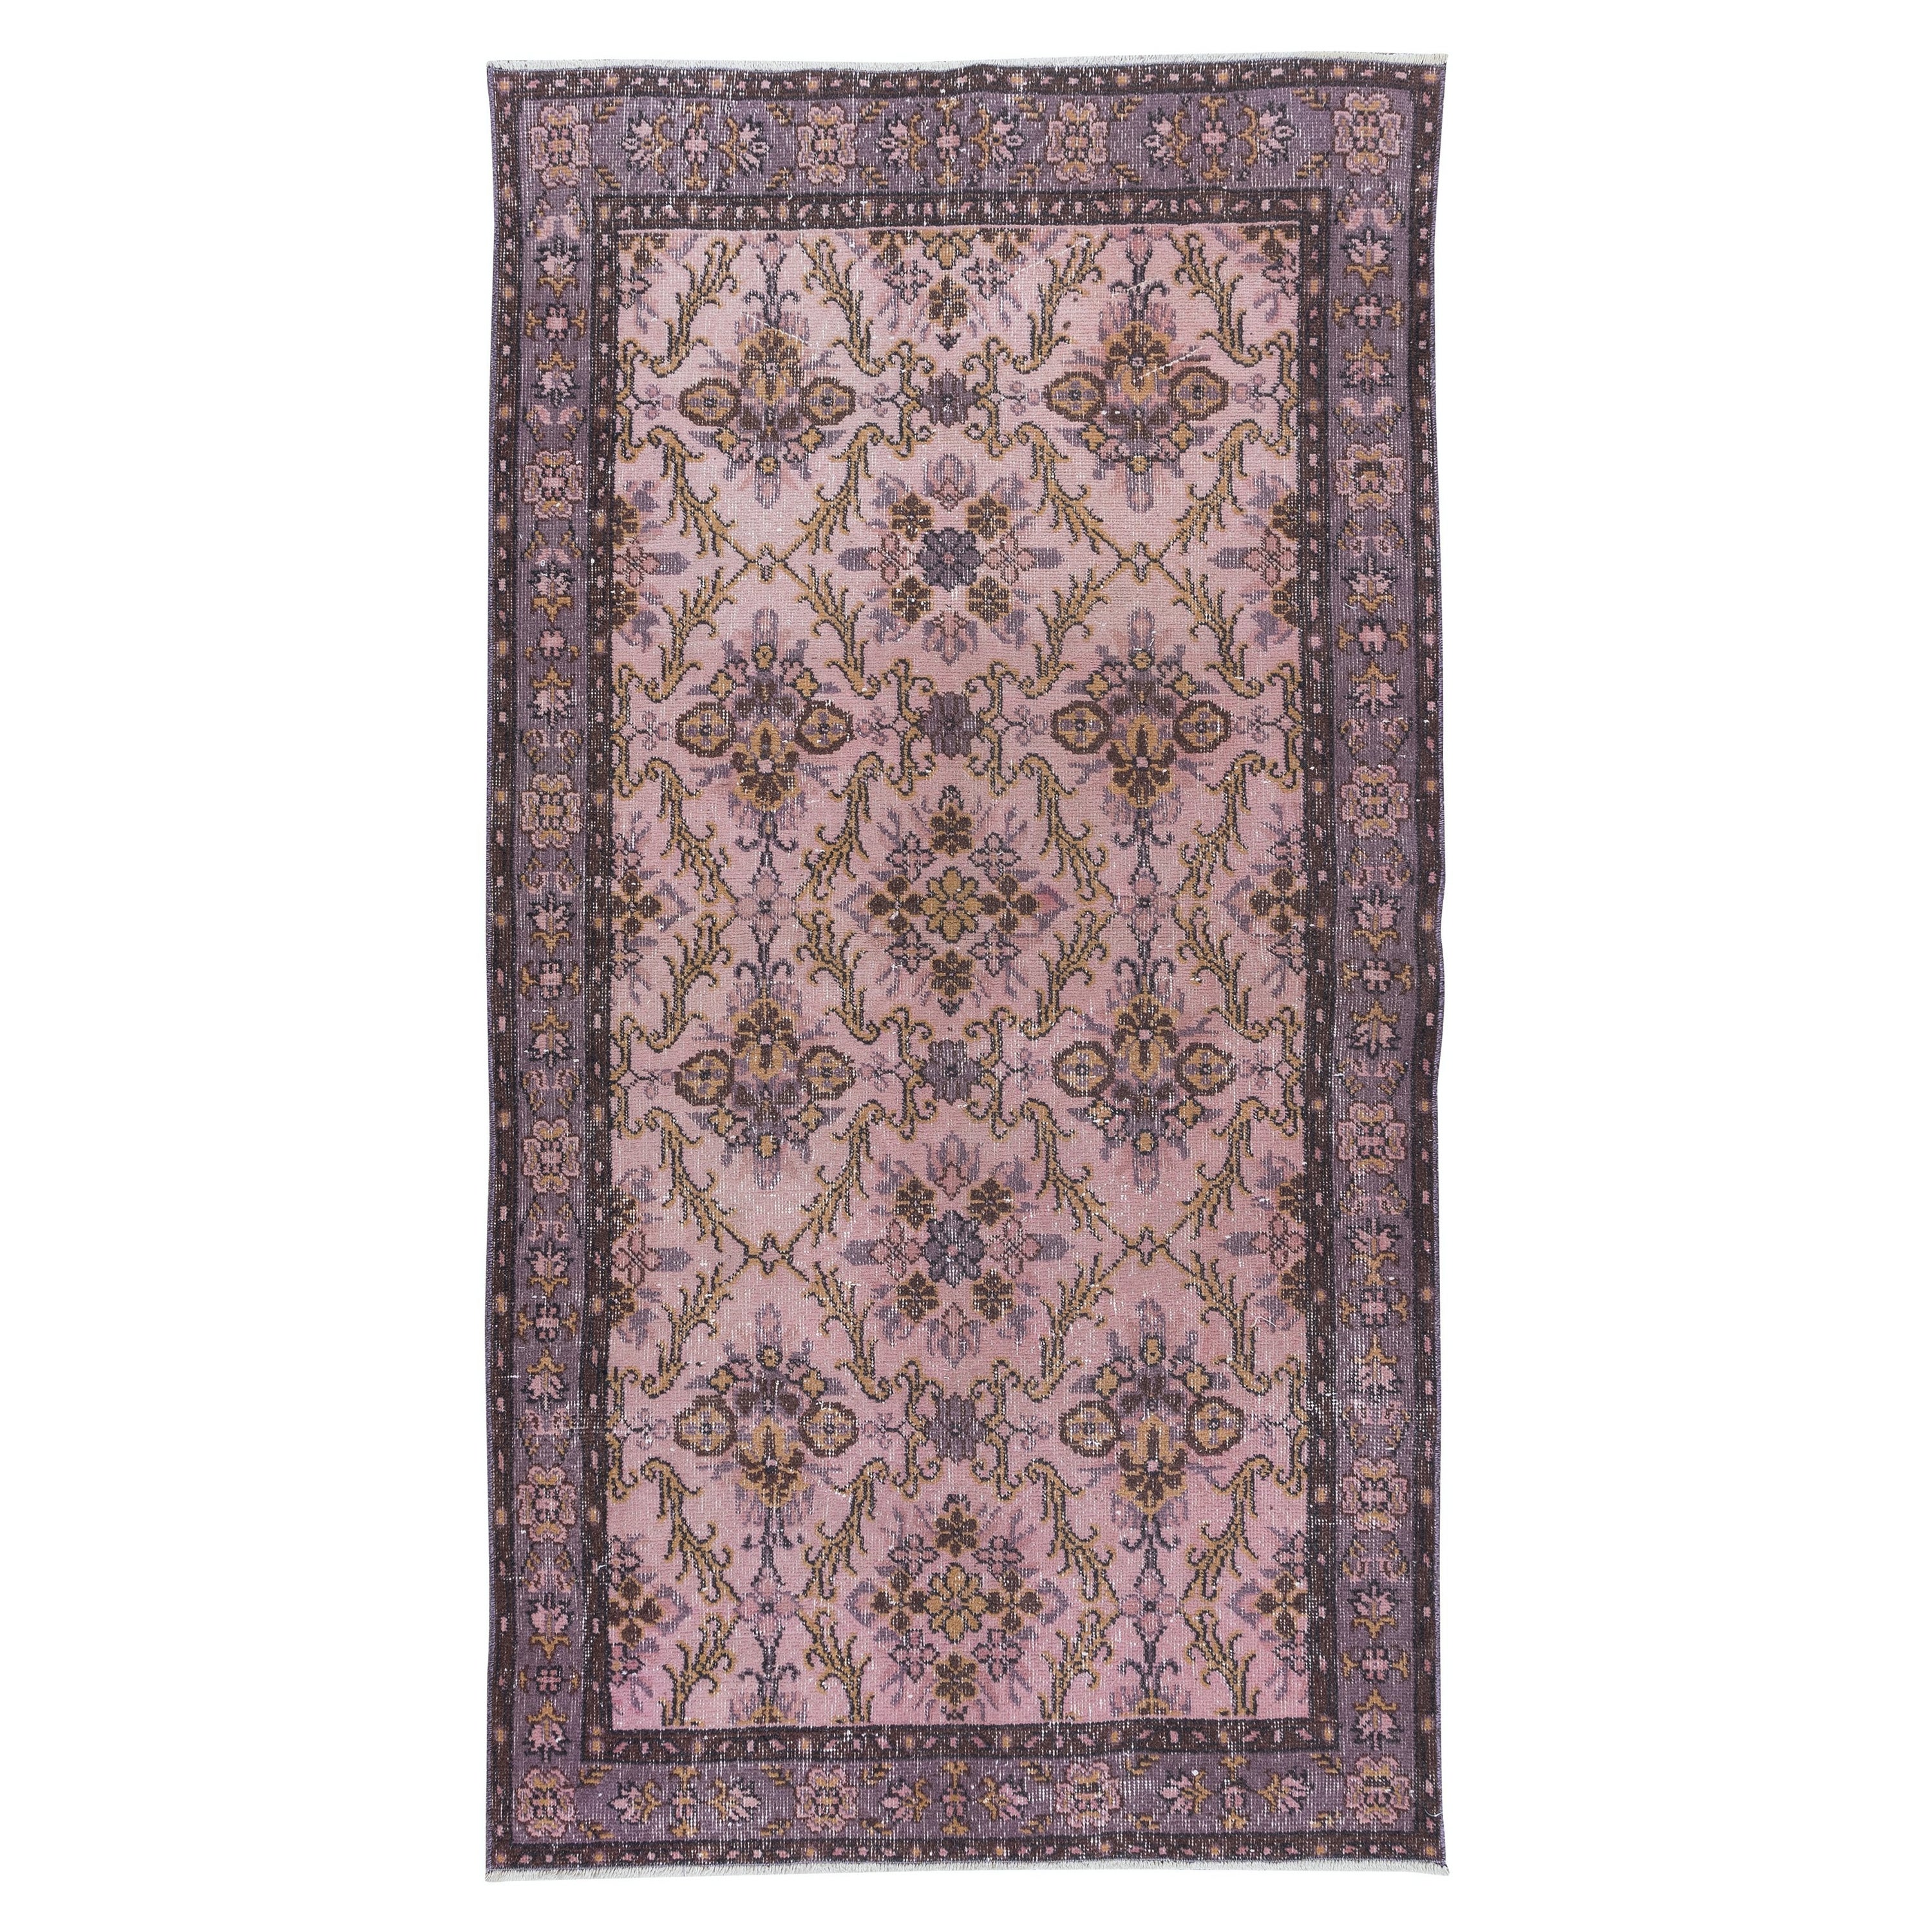 3.8x7 Ft Handmade Turkish Light Pink Rug, Modern Home Decor Floral Carpet (tapis floral)